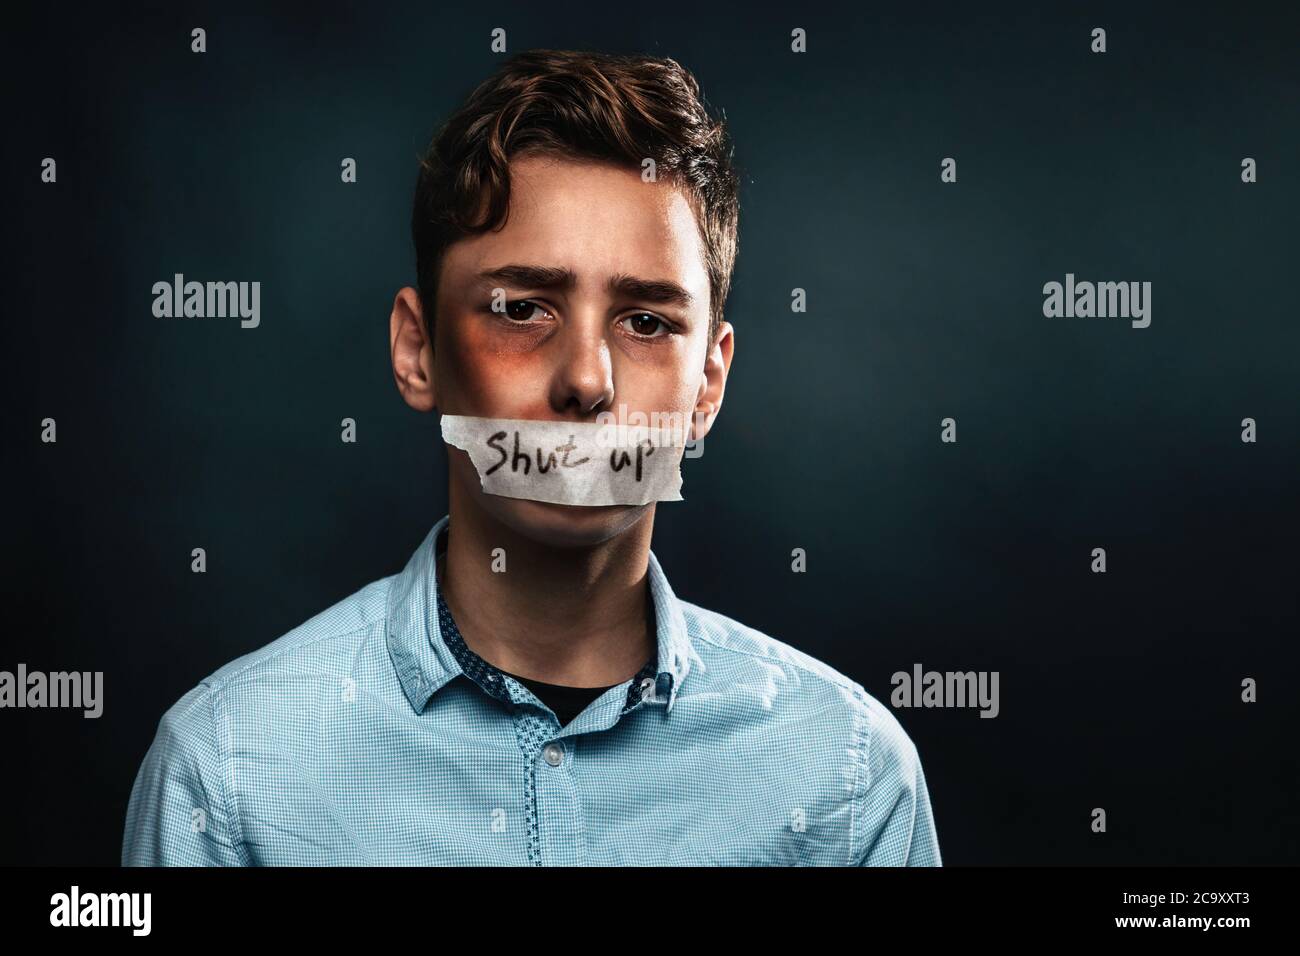 Le concept de violence domestique. Portrait d'un adolescent avec sa bouche fermée par ruban adhésif, ce qui dit Tais-toi. Arrière-plan noir. Copier l'espace Banque D'Images